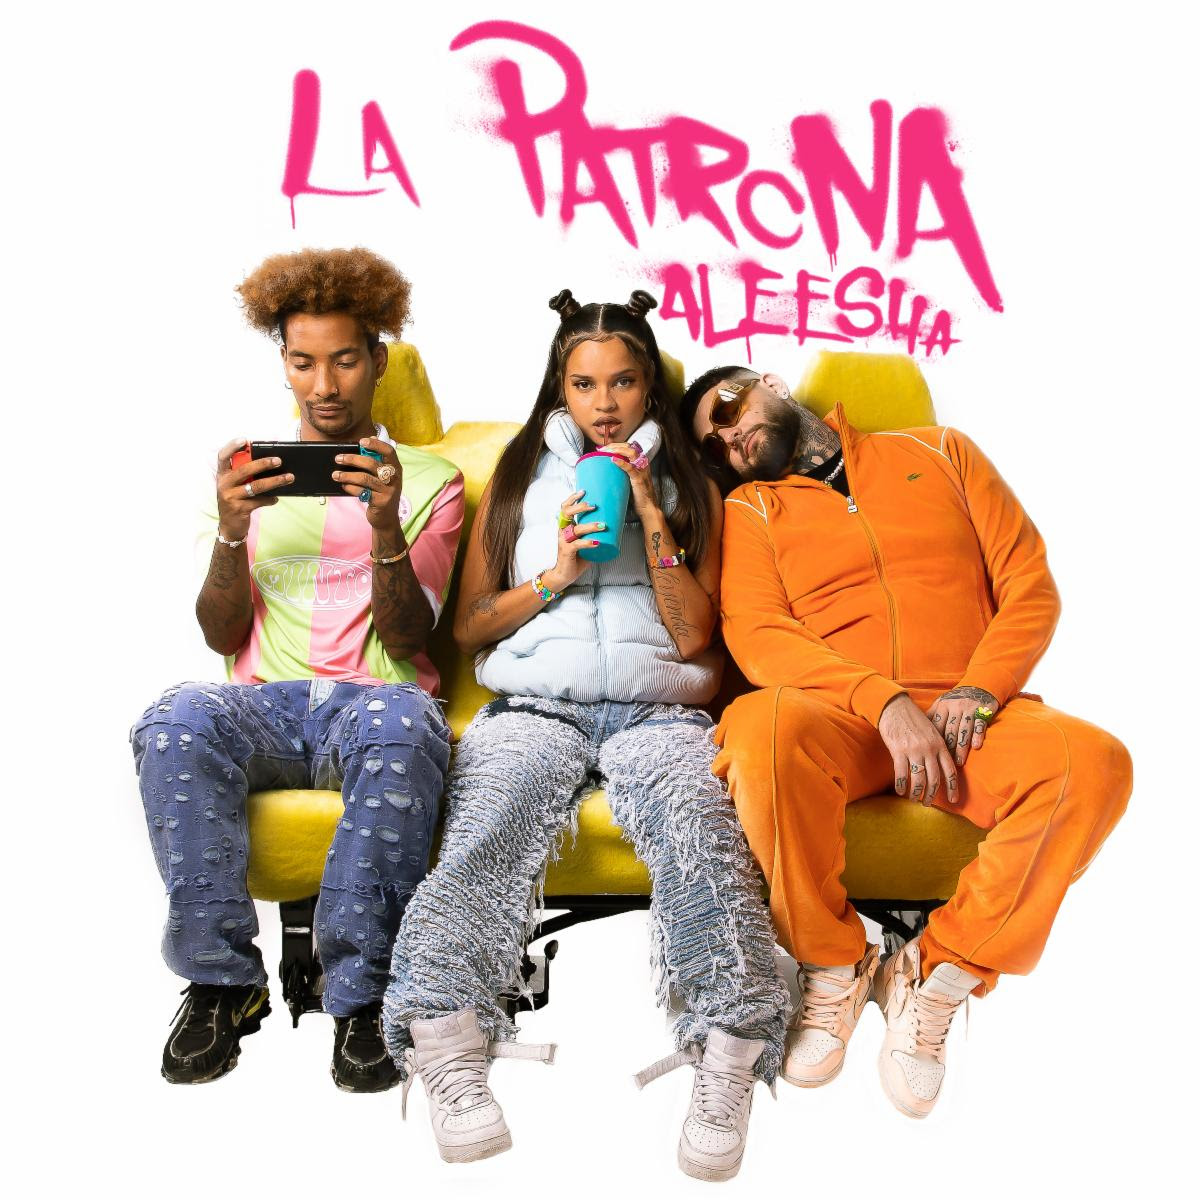 ALEESHA VISITARÁ LA ARGENTINA CON SU NUEVO EP “LA PATRONA”: UNA EXPERIENCIA MUSICAL Y VISUAL ÚNICA 